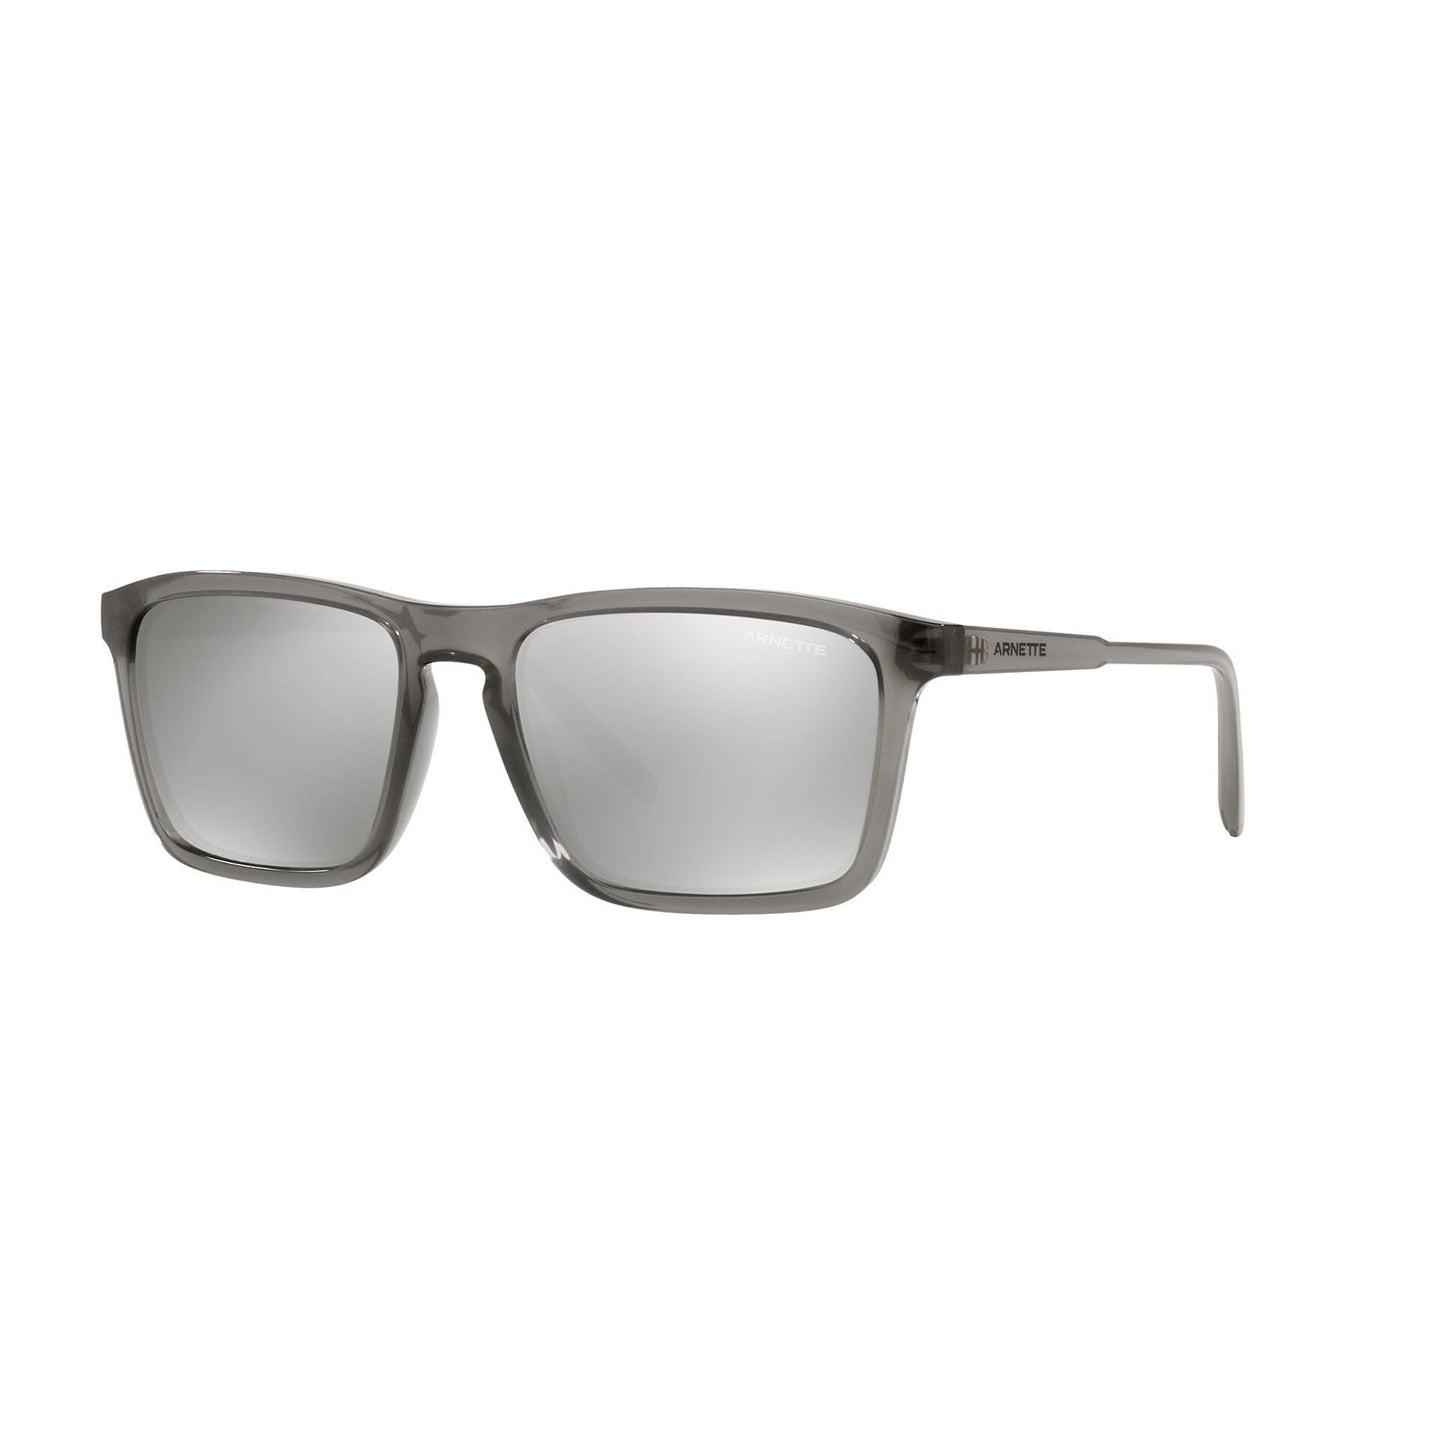 sunglasses arnette model AN 4283 color 2590/z6